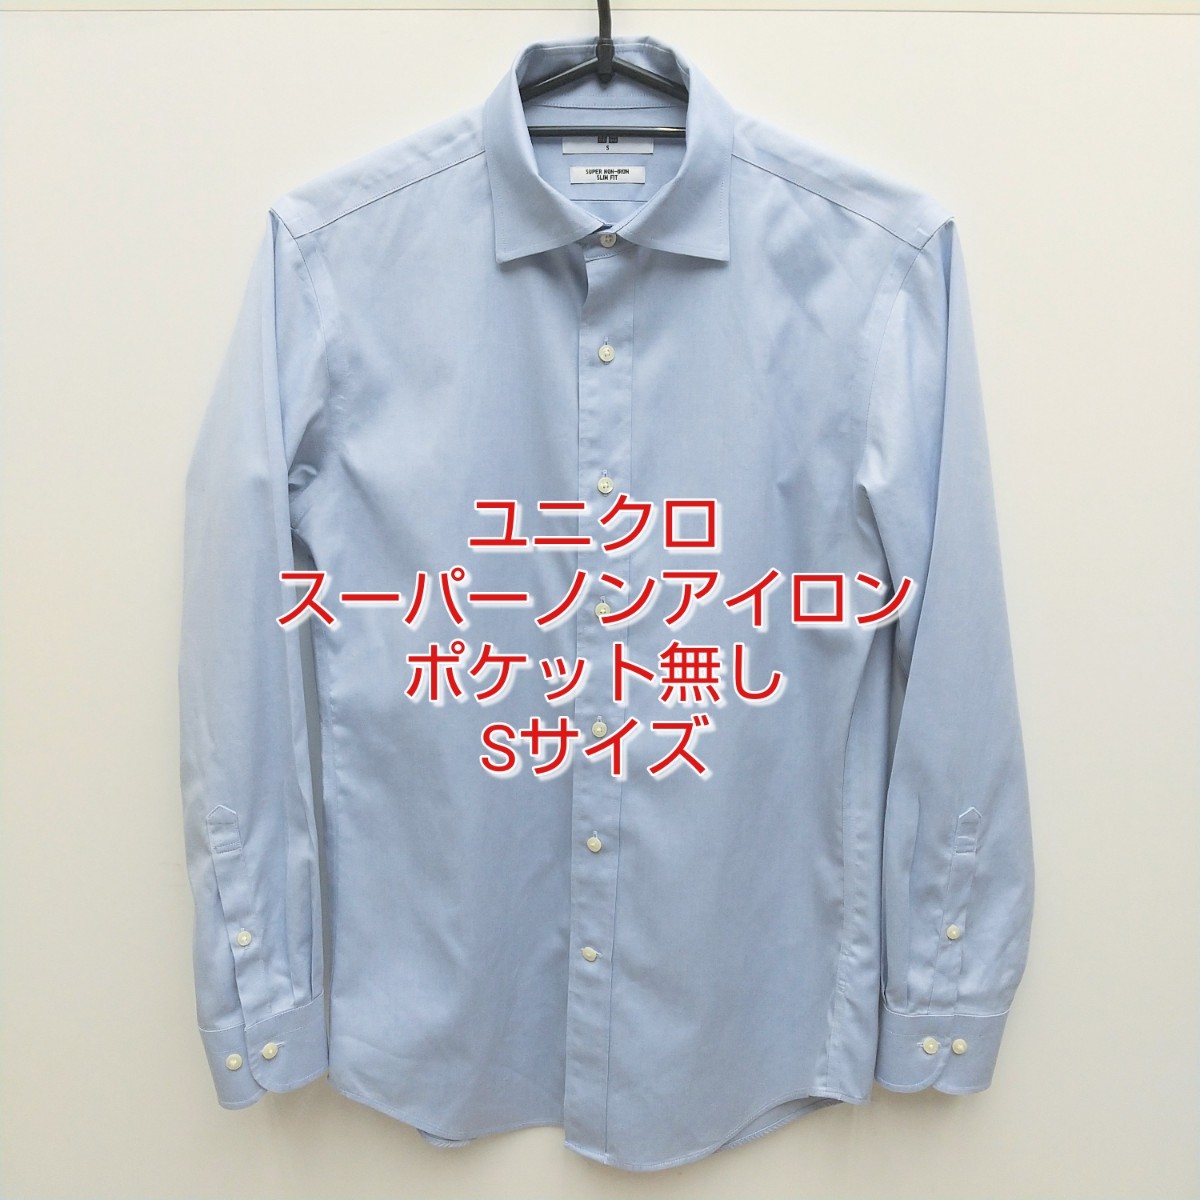 ユニクロ セミワイド・ポケット無・長袖シャツ ライトブルー スーパーノンアイロンスリムフィットシャツ